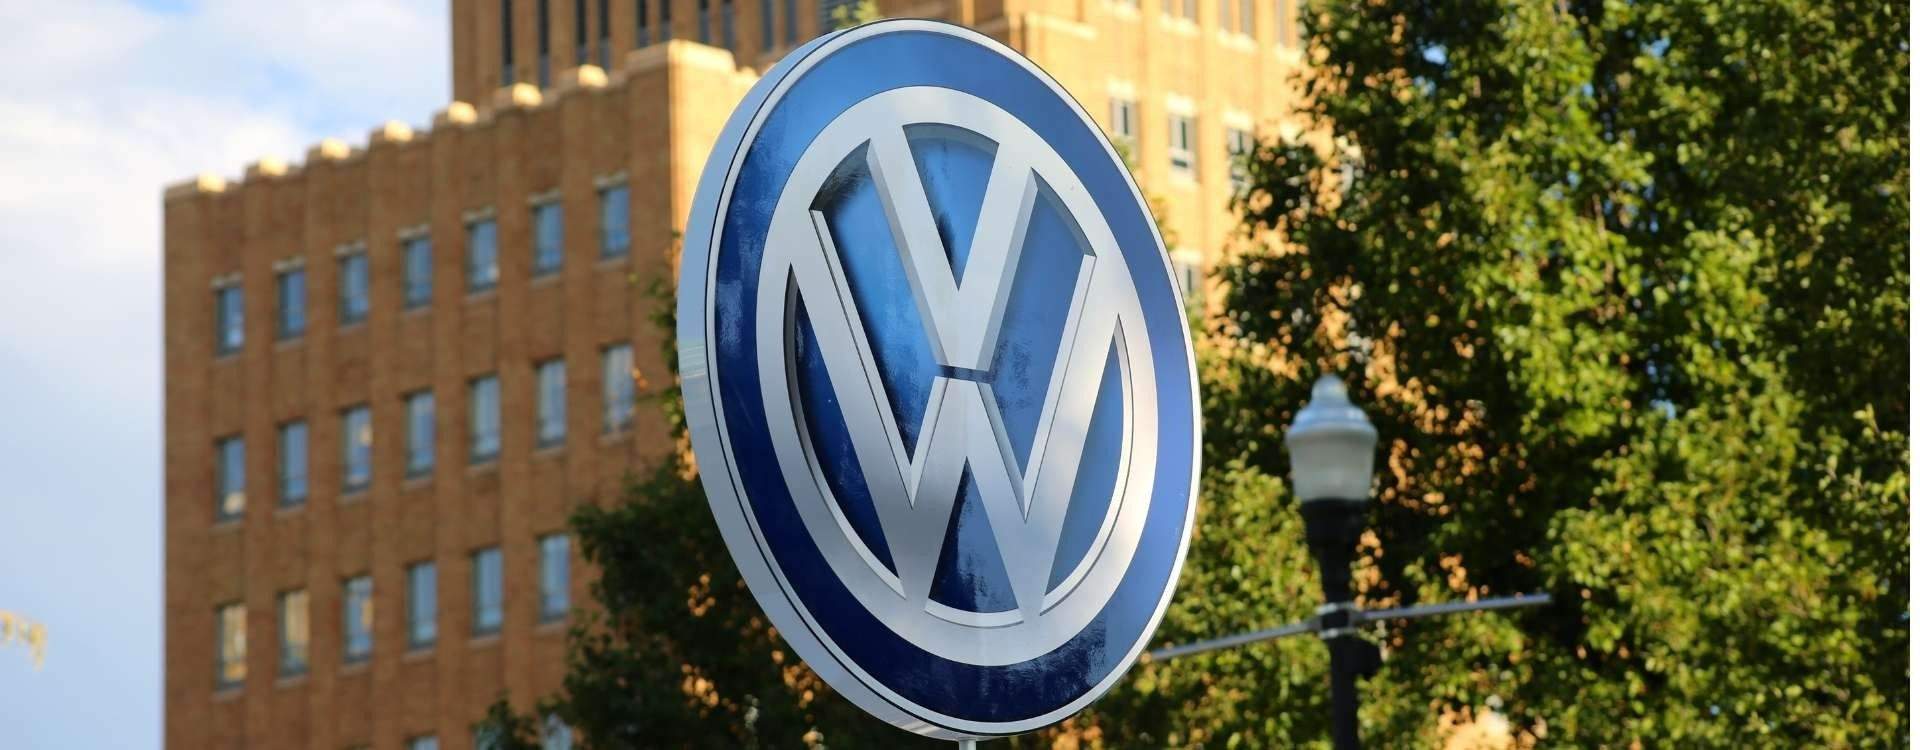 La marca Volkswagen ya no desea desarrollar nuevos motores térmicos